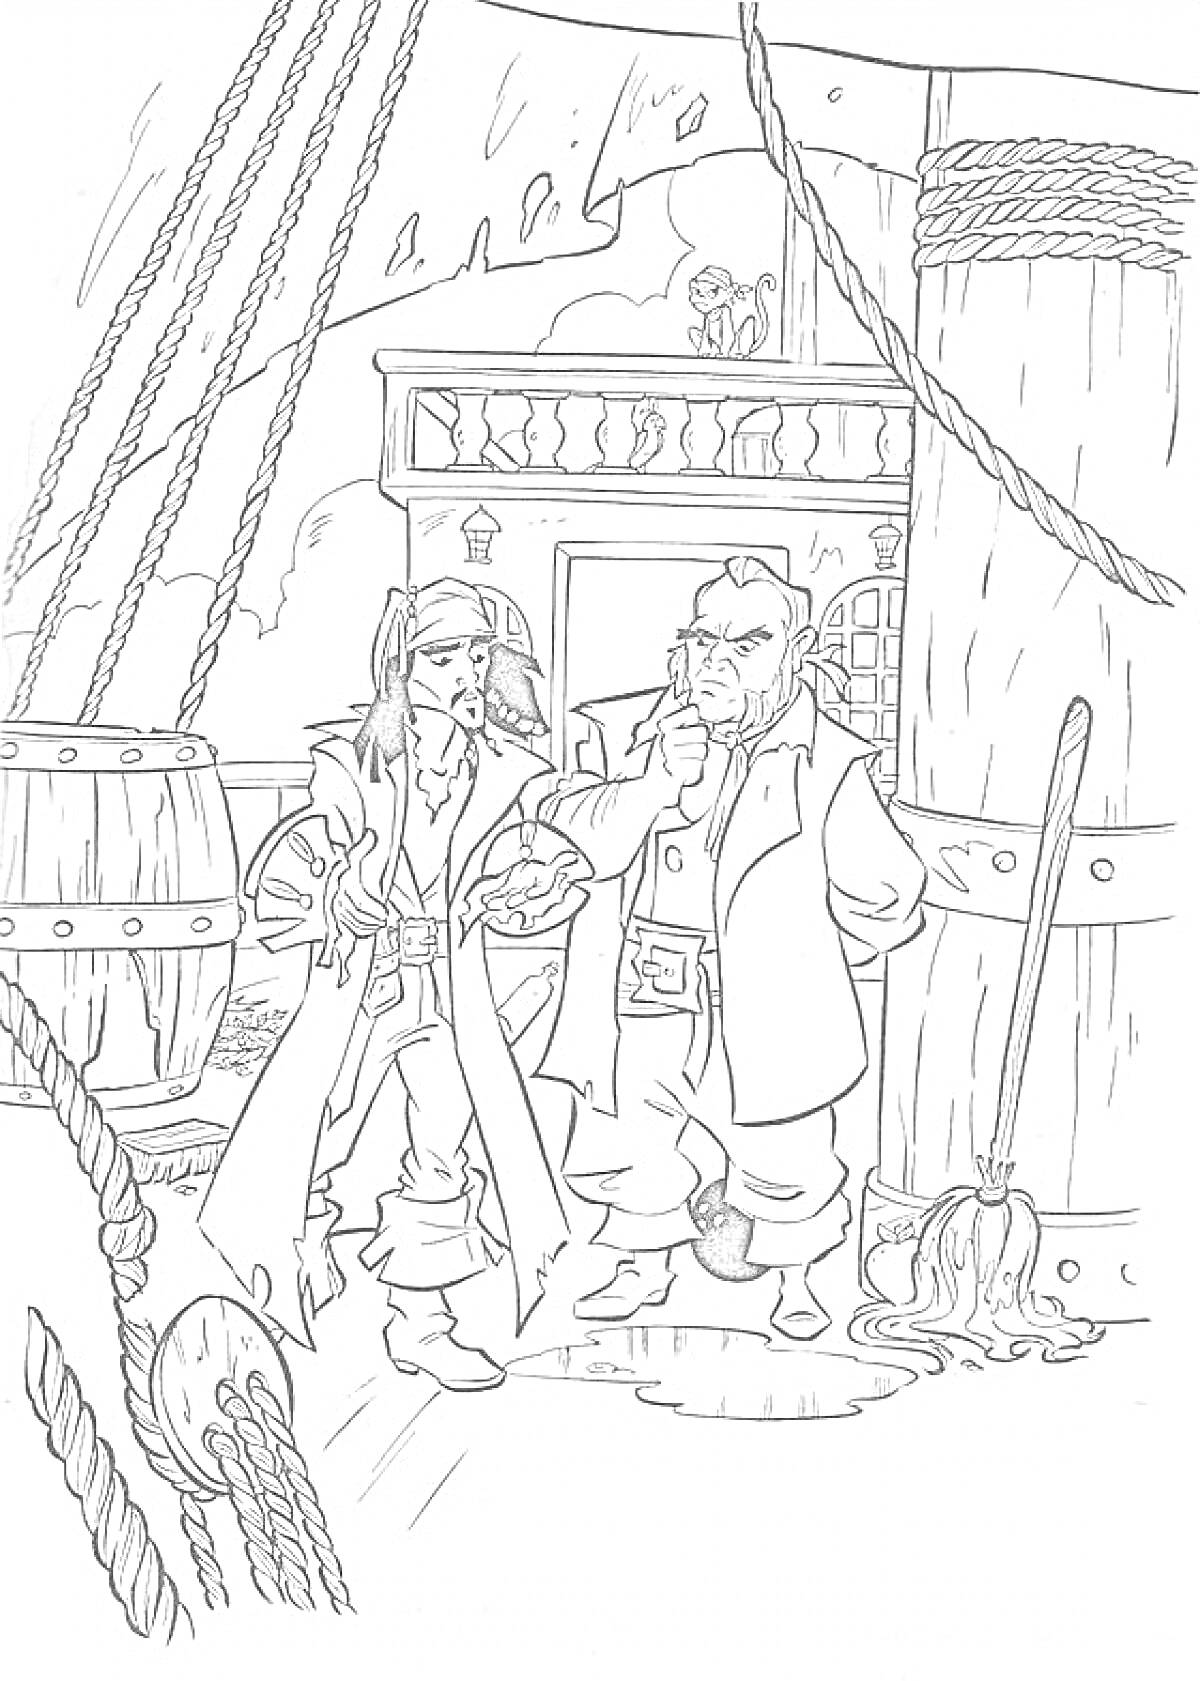 Раскраска Два пирата на палубе корабля с деревянной бочкой, шваброй, канатами и каютой на заднем плане.